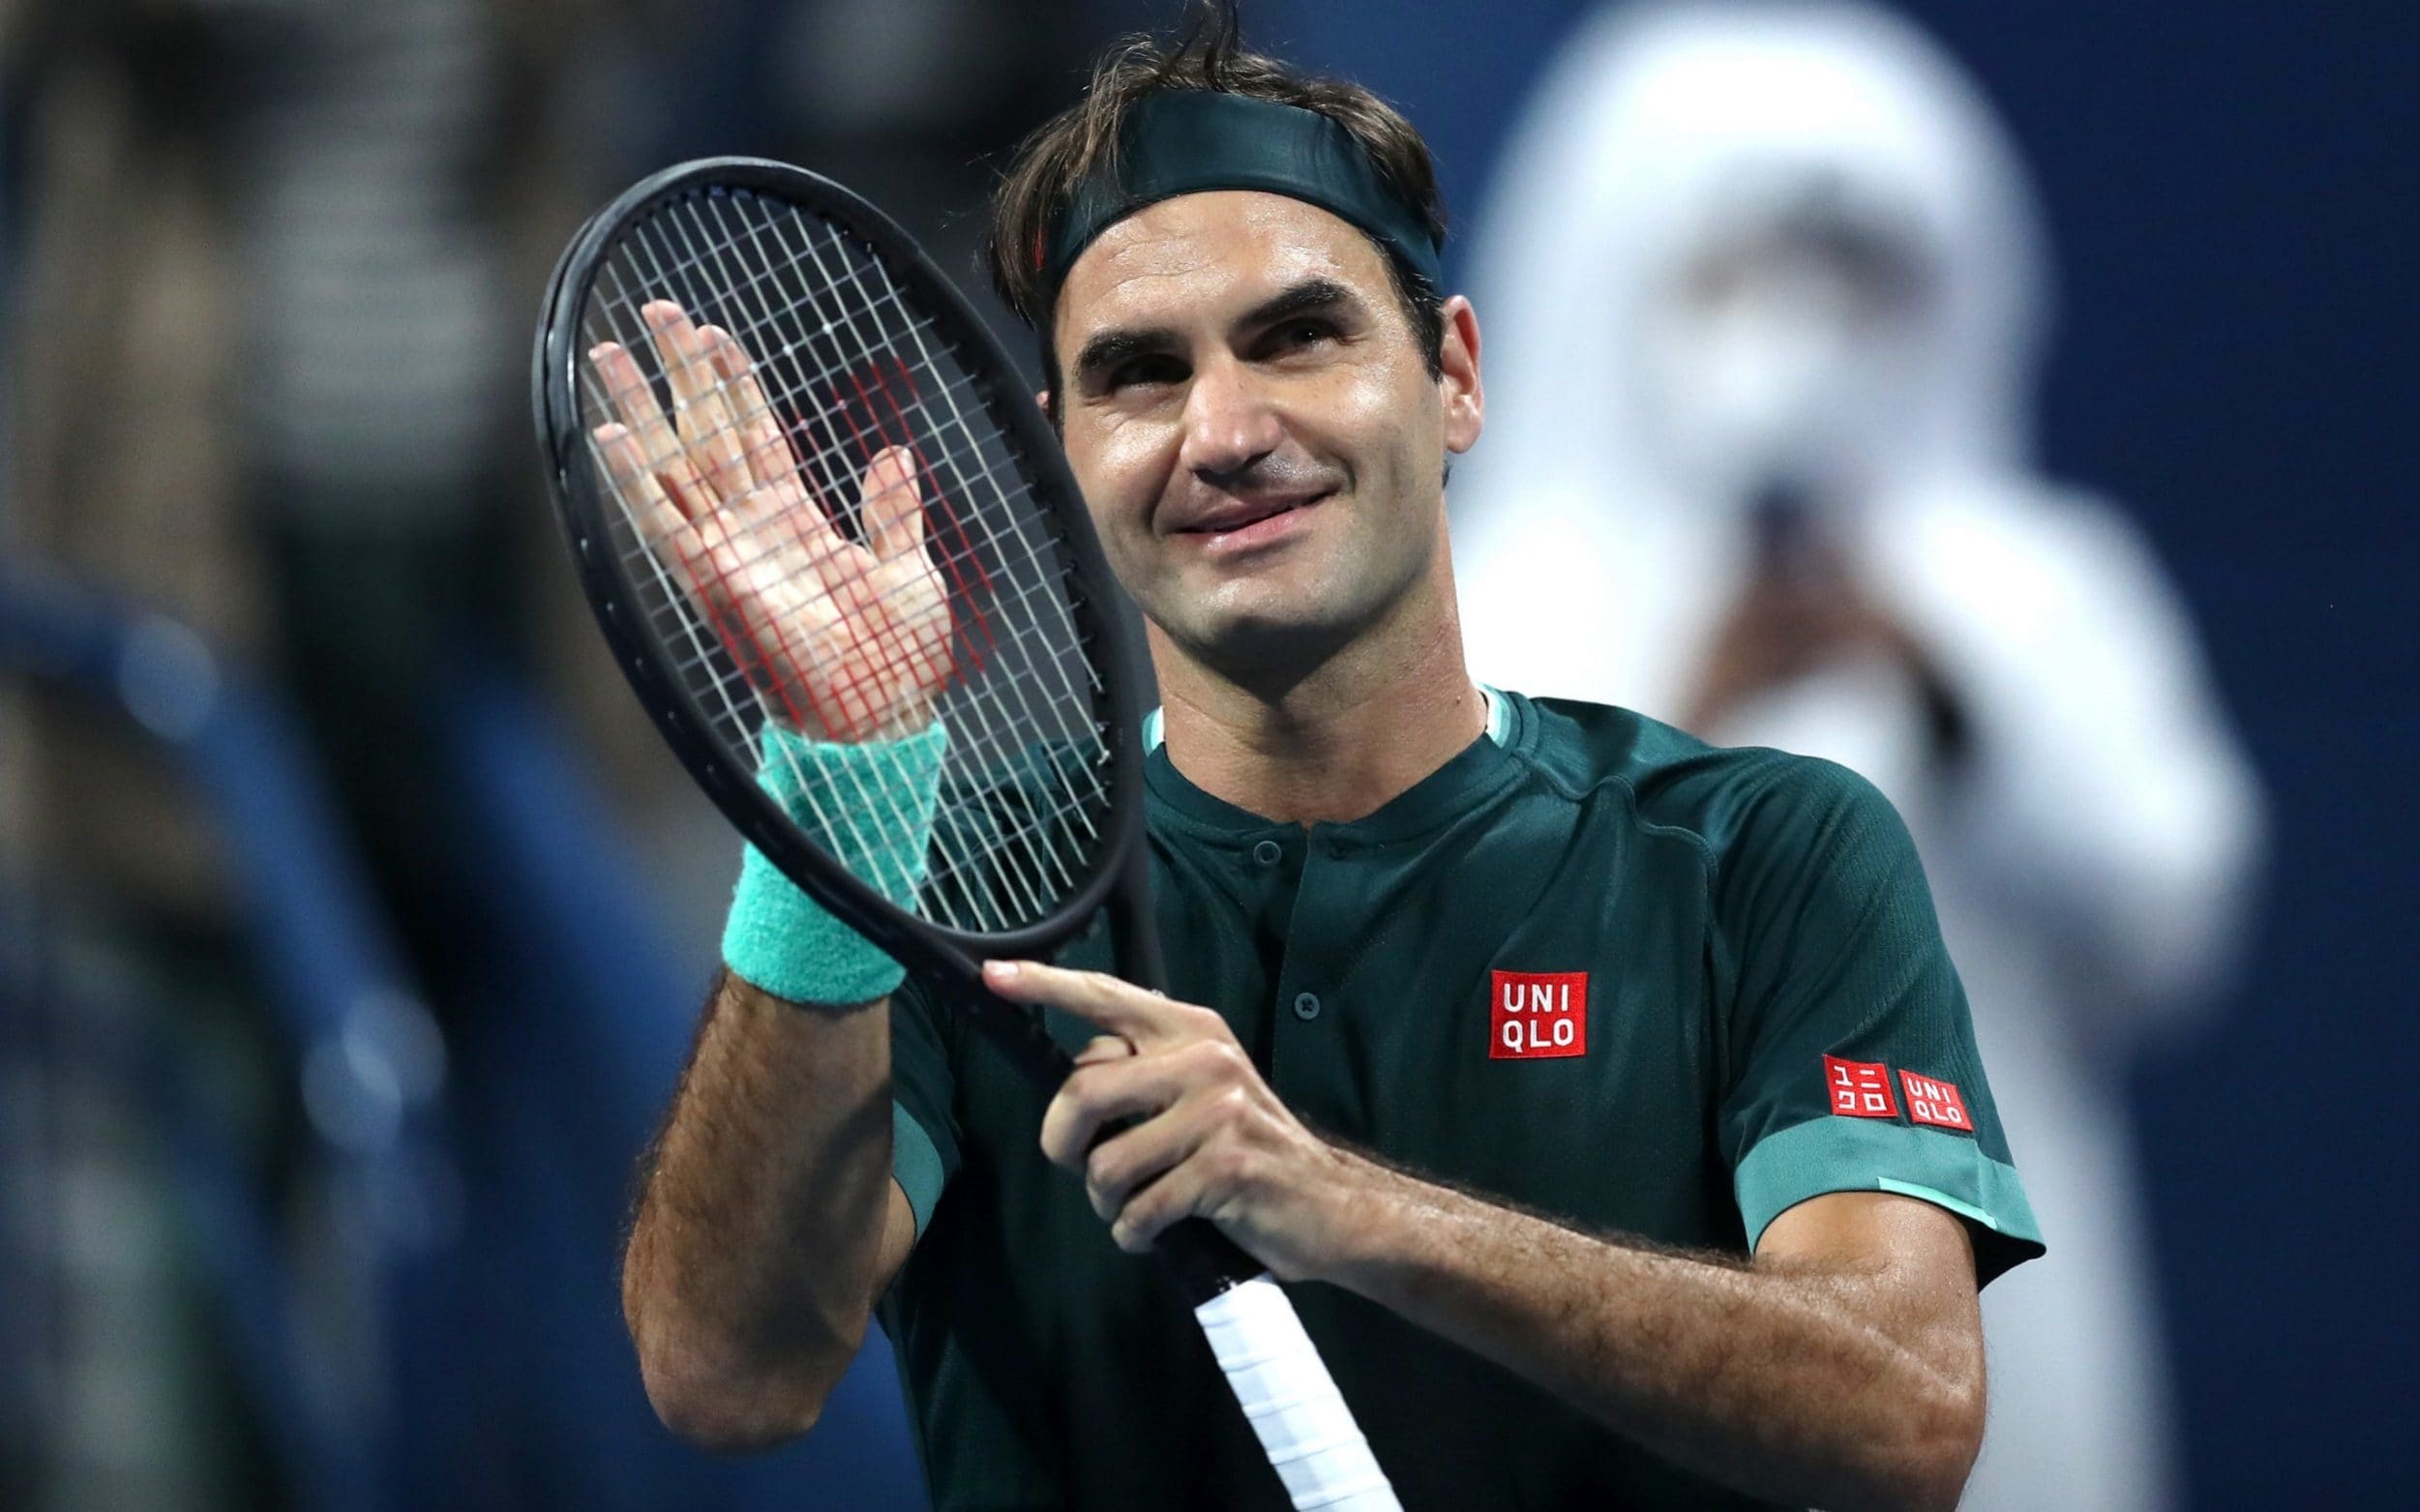 Qatar Open: Federer Wins First Match After 13 Months Out